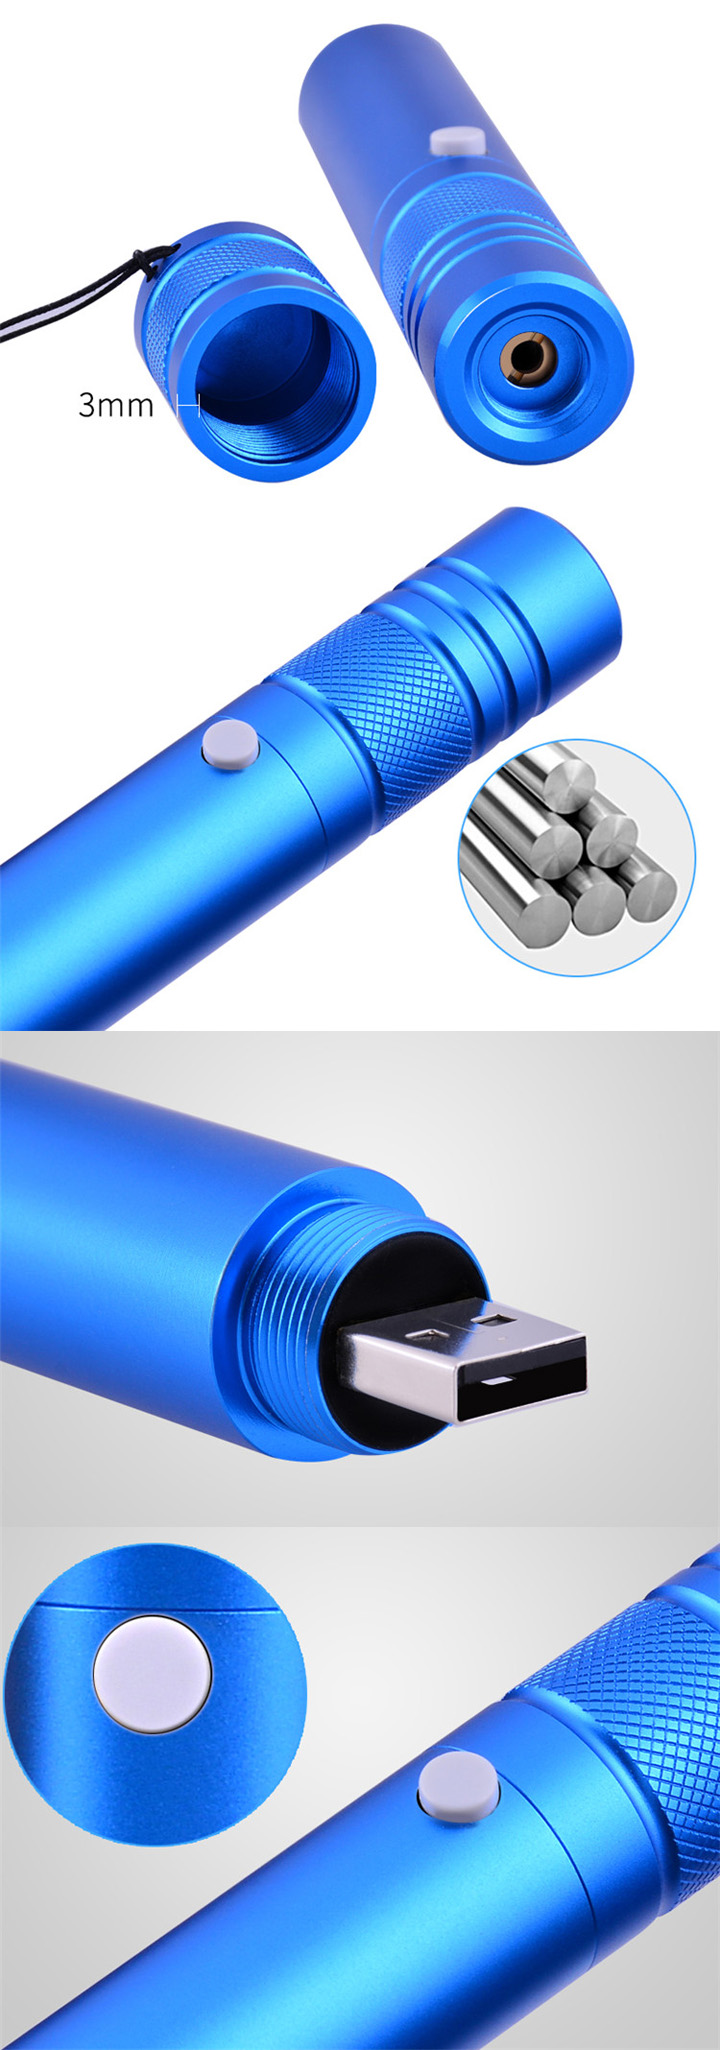 Pointeur de faisceau de pointeur laser rouge rechargeable 200mW 650nm bleu  unique - FR - Laserpointerpro